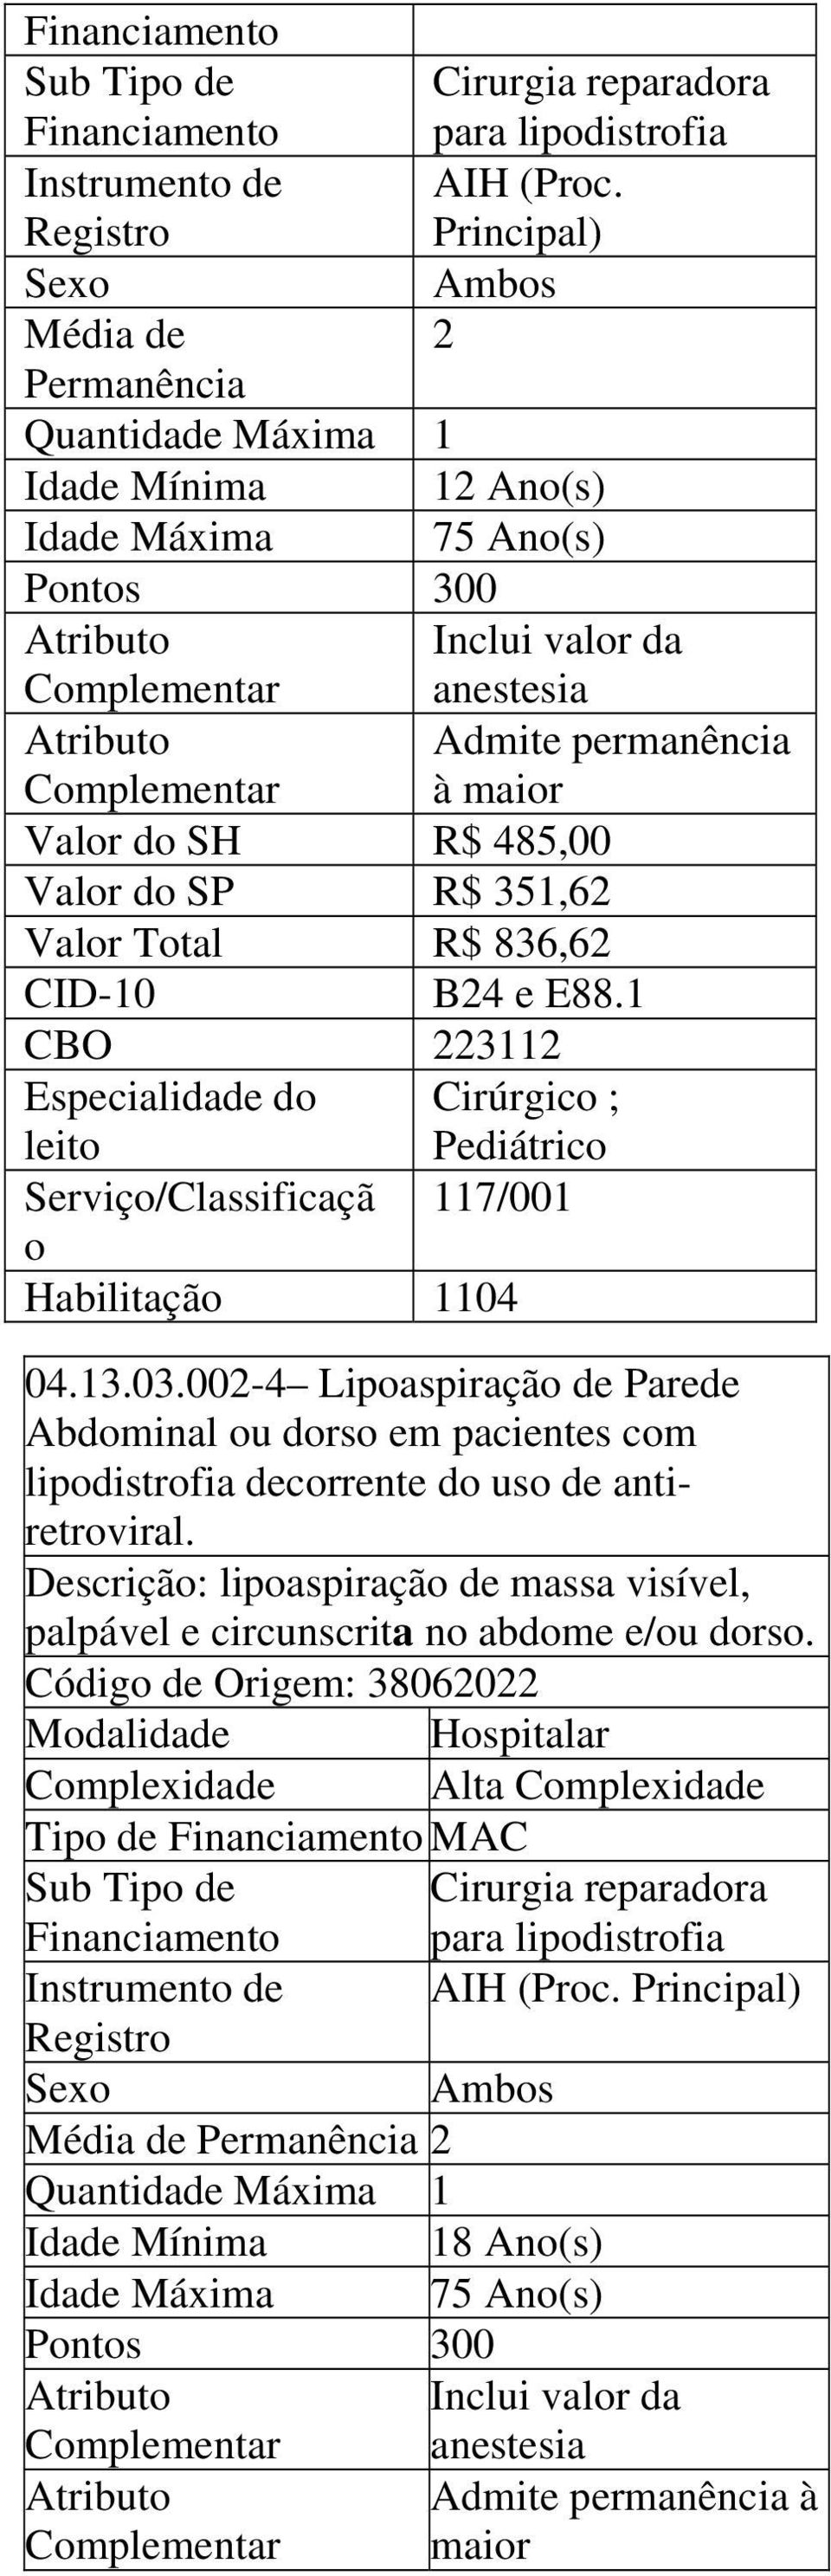 1 Admite permanência à Especialidade do Cirúrgico ; leito Pediátrico Serviço/Classificaçã 117/001 o 04.13.03.